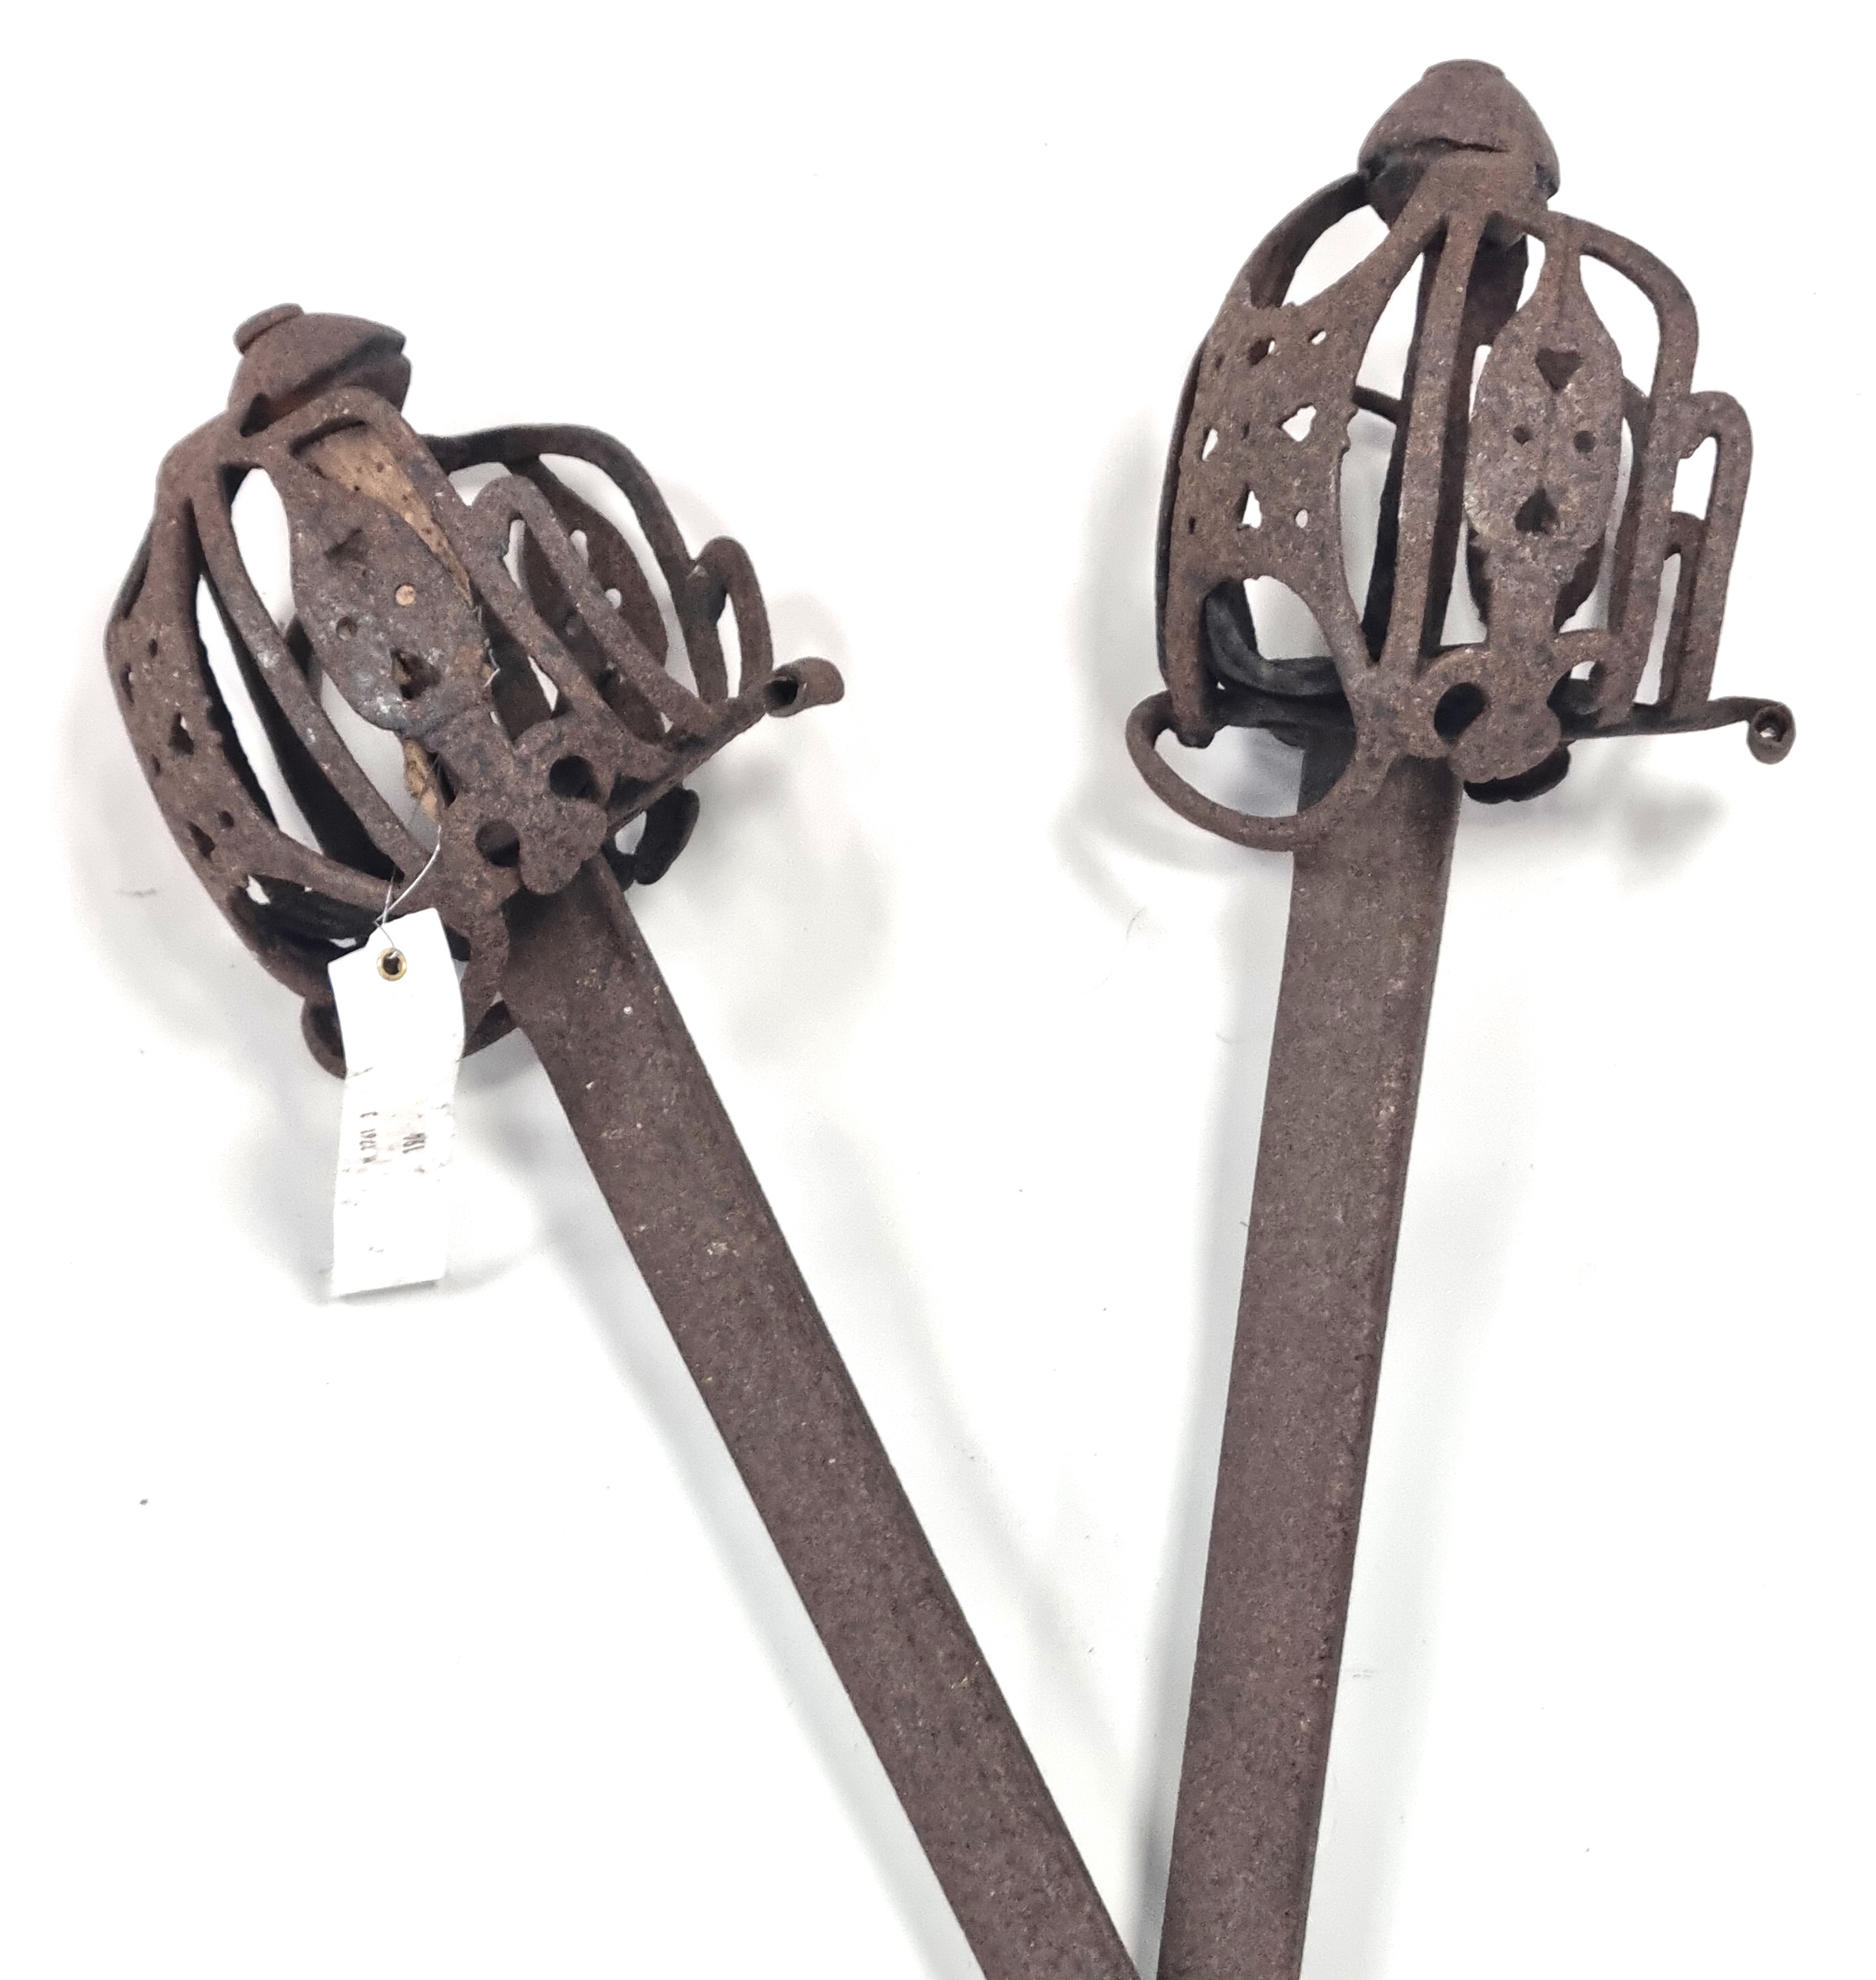 Scottish Basket-hilted swords